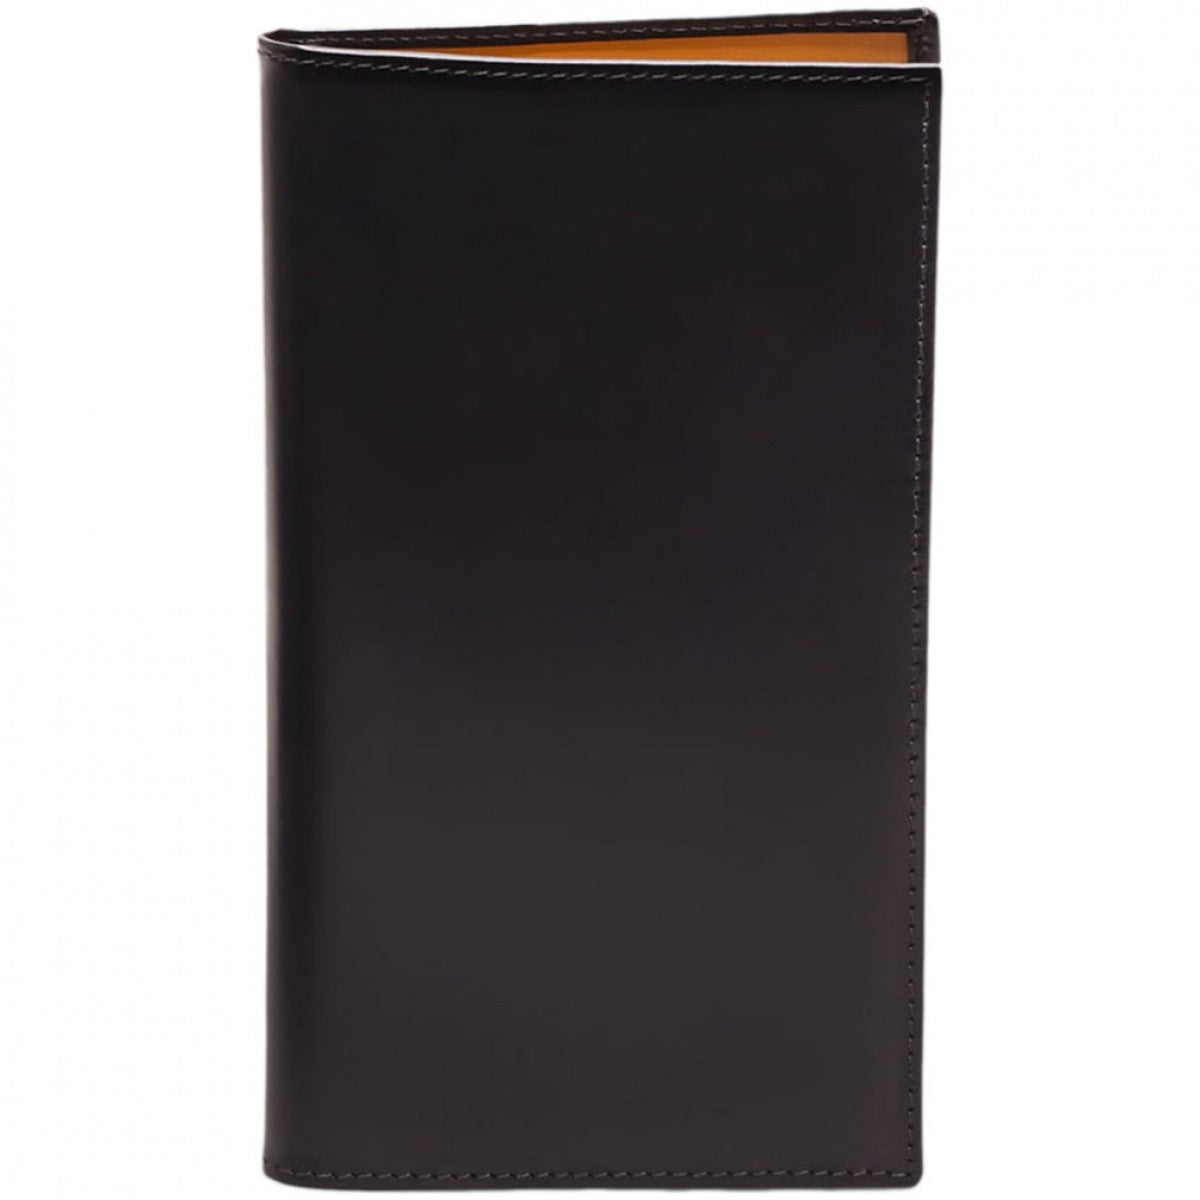 Ettinger Men's Leather Breast Pocket Wallet, 8 CC Slips, Black